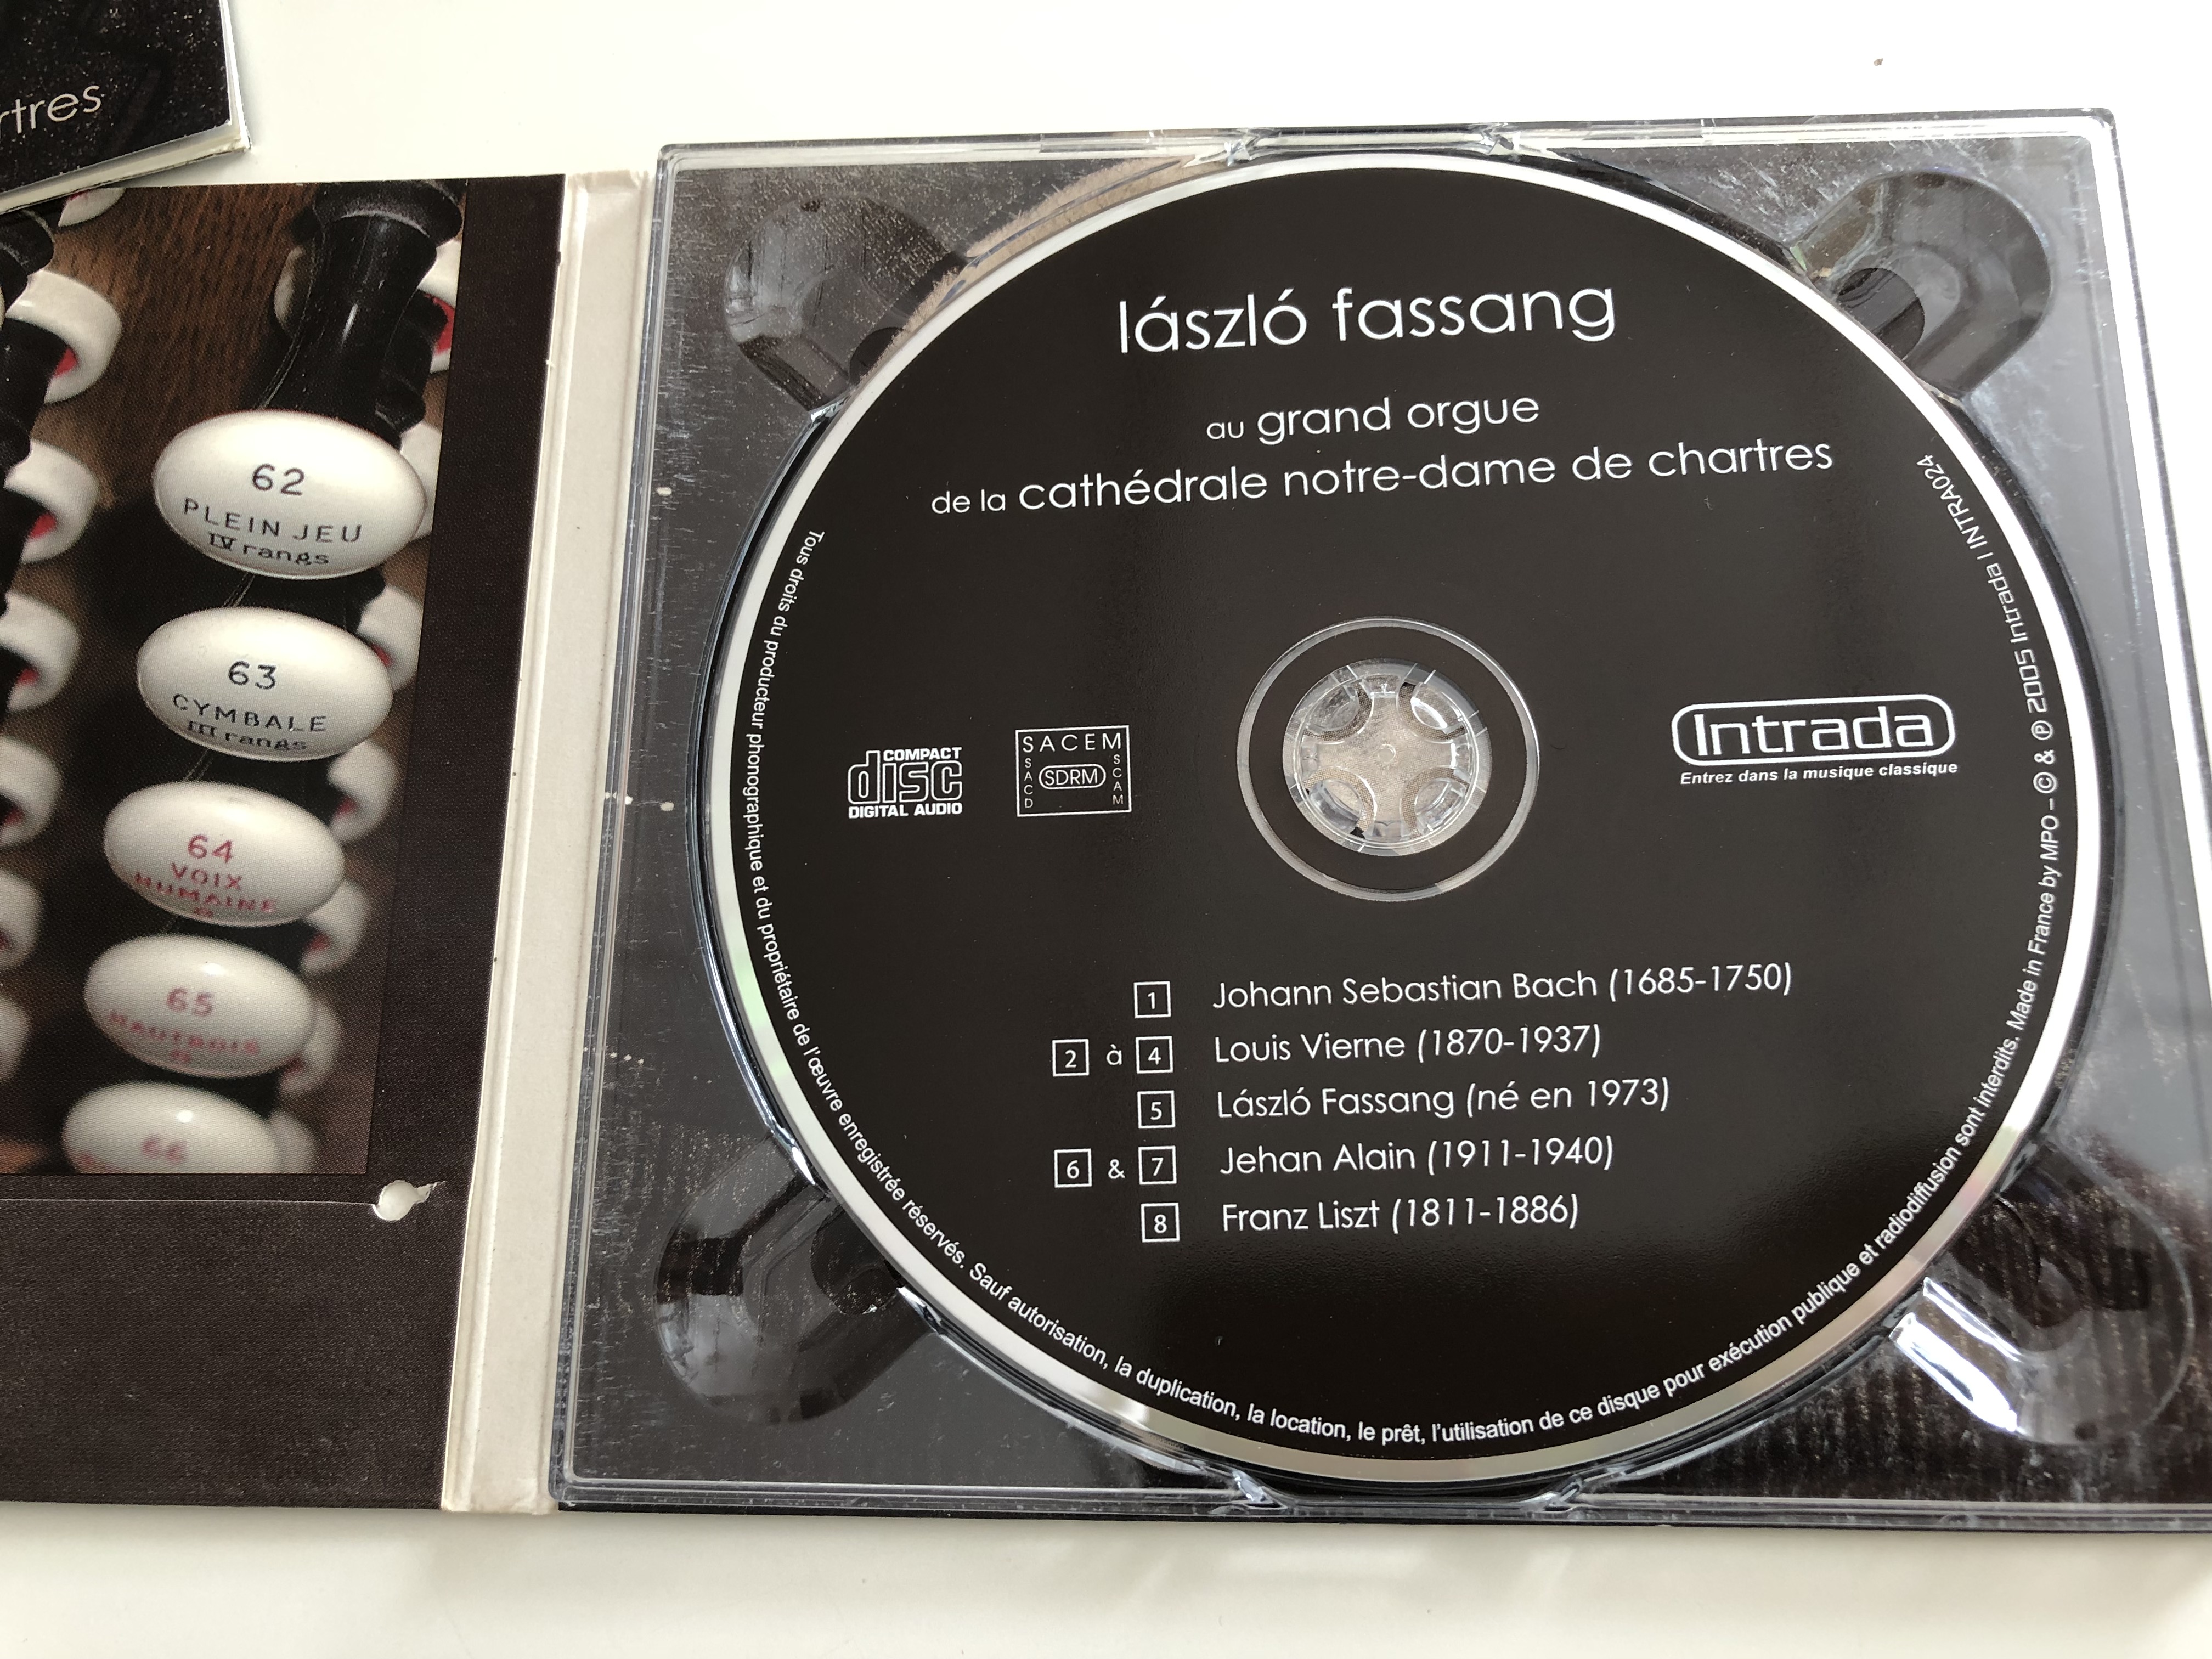 l-szl-fassang-au-grand-orgue-de-la-cath-drale-notre-dame-de-chartres-bach-vierne-alain-liszt-audio-cd-2005-intrada-3-.jpg